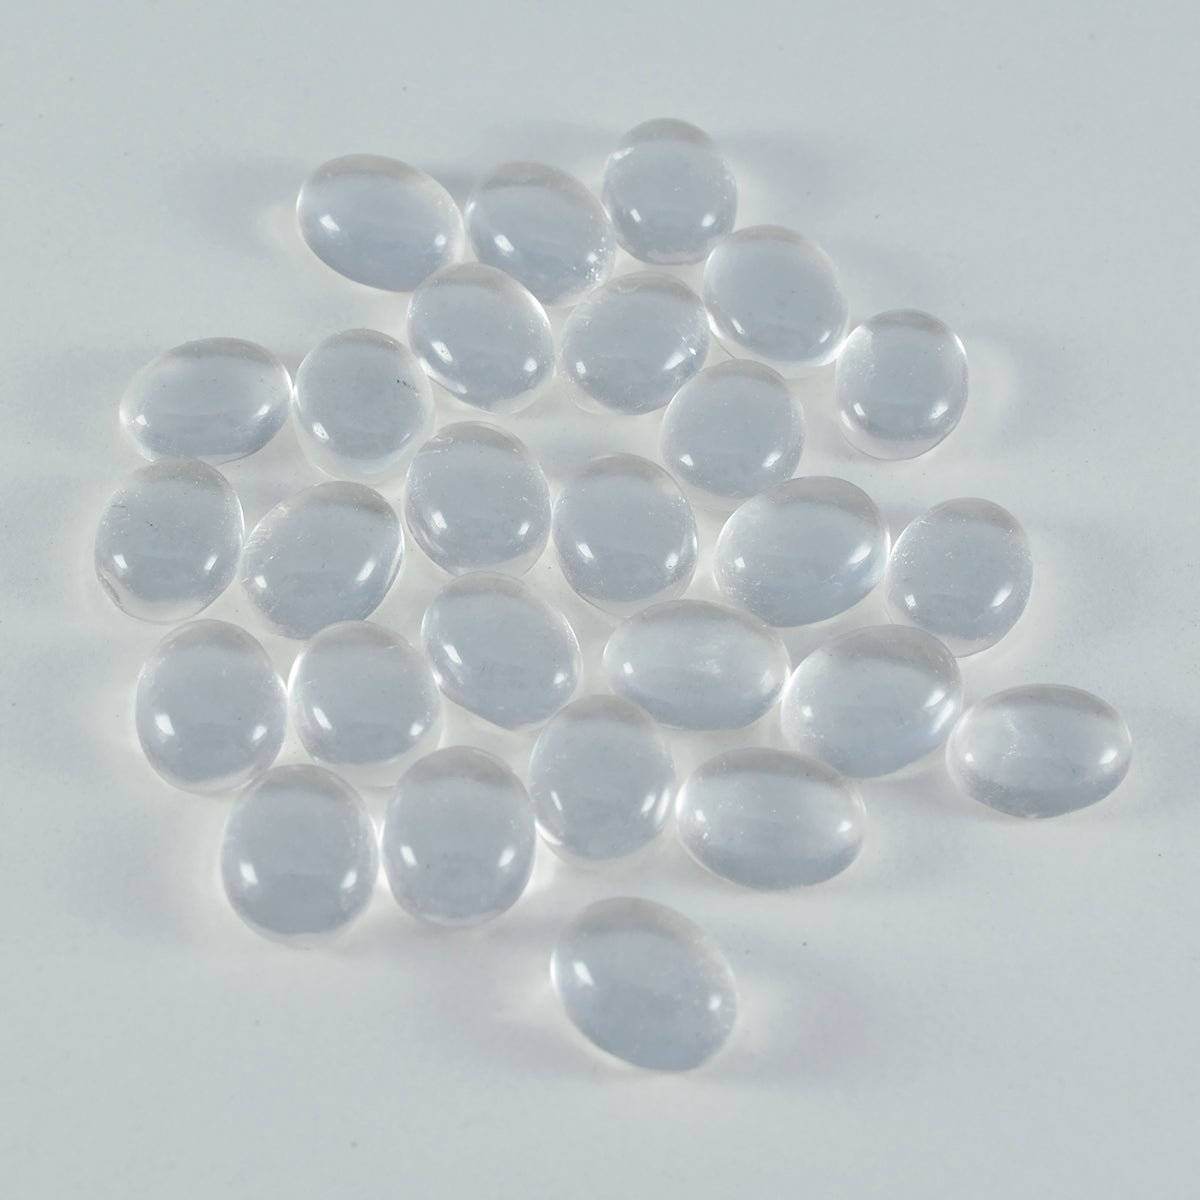 riyogems 1 шт. белый кристалл кварца кабошон 7x9 мм овальной формы прекрасный качественный драгоценный камень